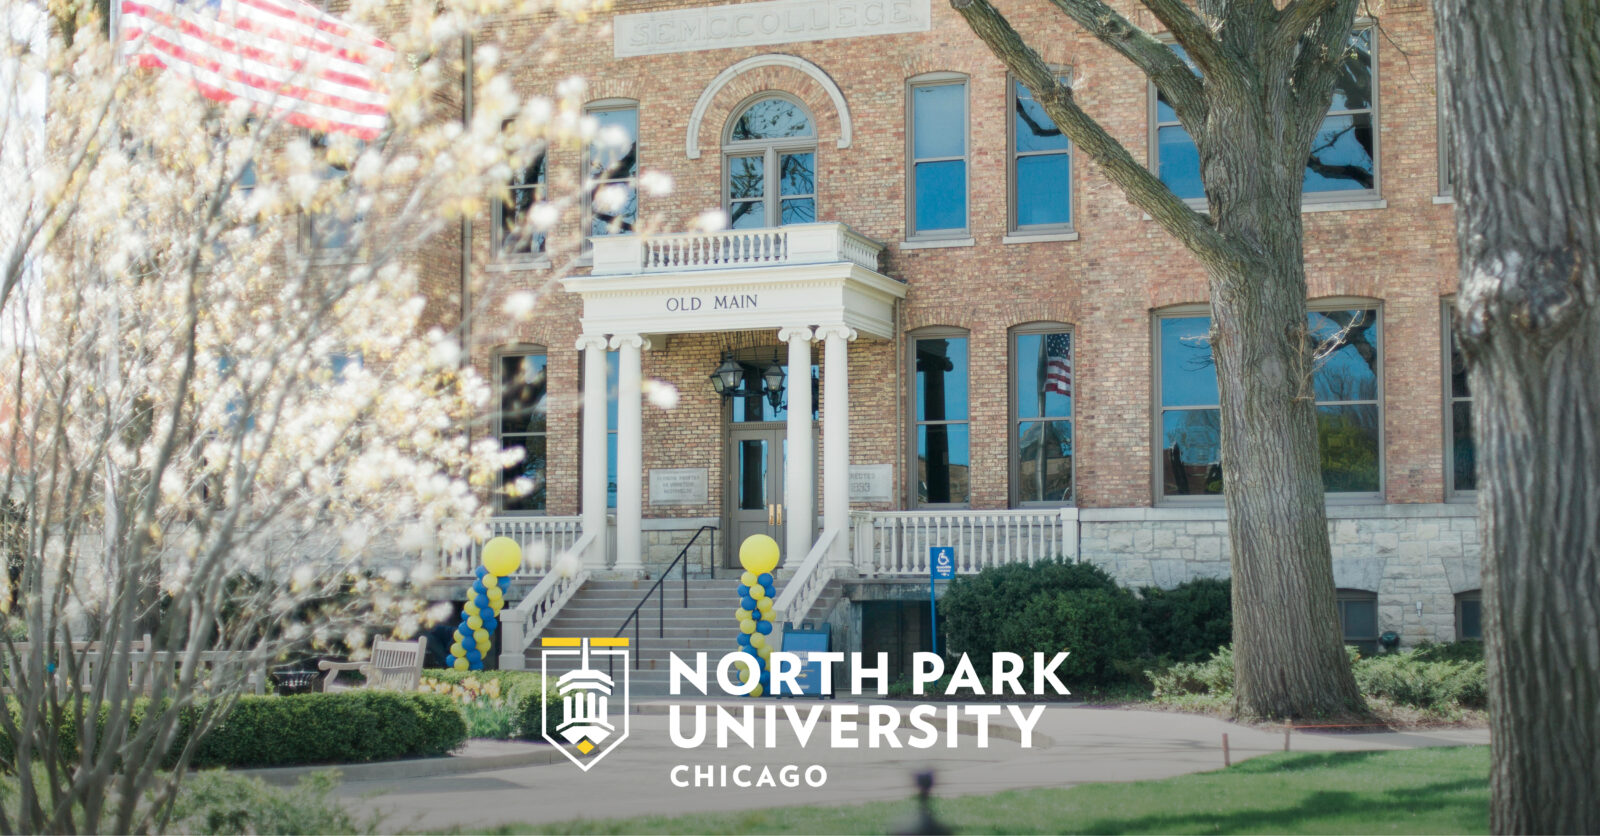 Lance Nelson - North Park University - Chicago, Illinois, United States